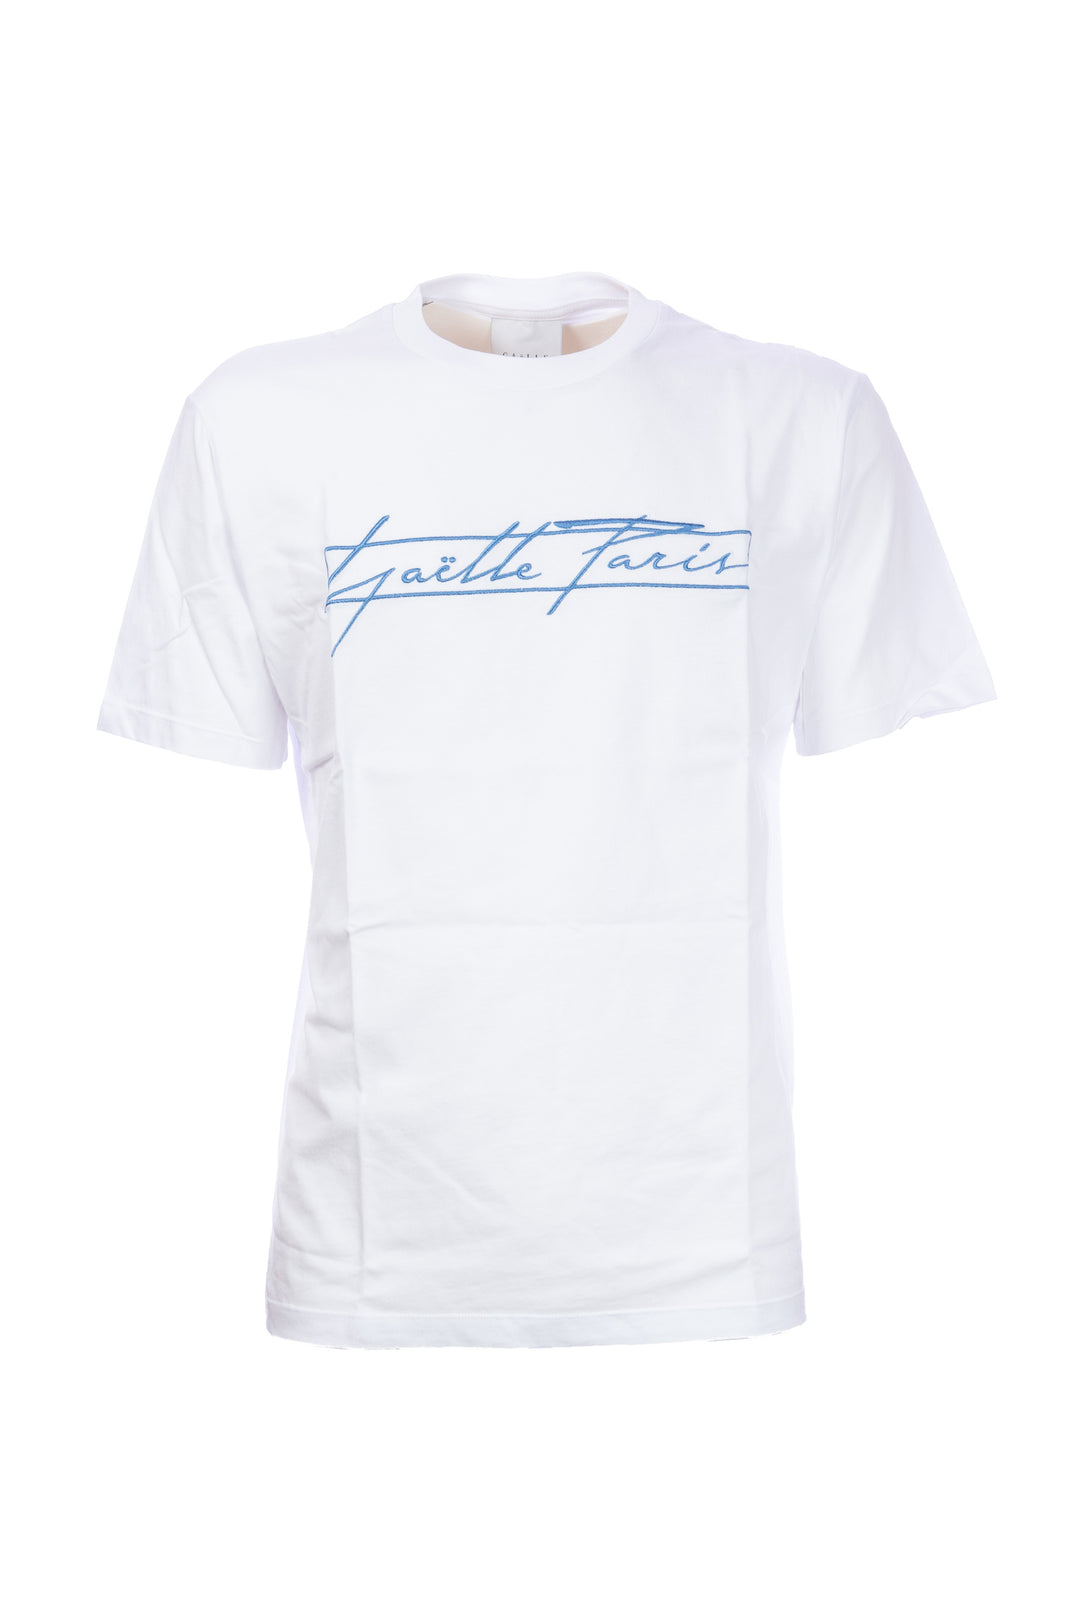 GAELLE T-shirt bianca in cotone con logo grande ricamato in contrasto - Mancinelli 1954